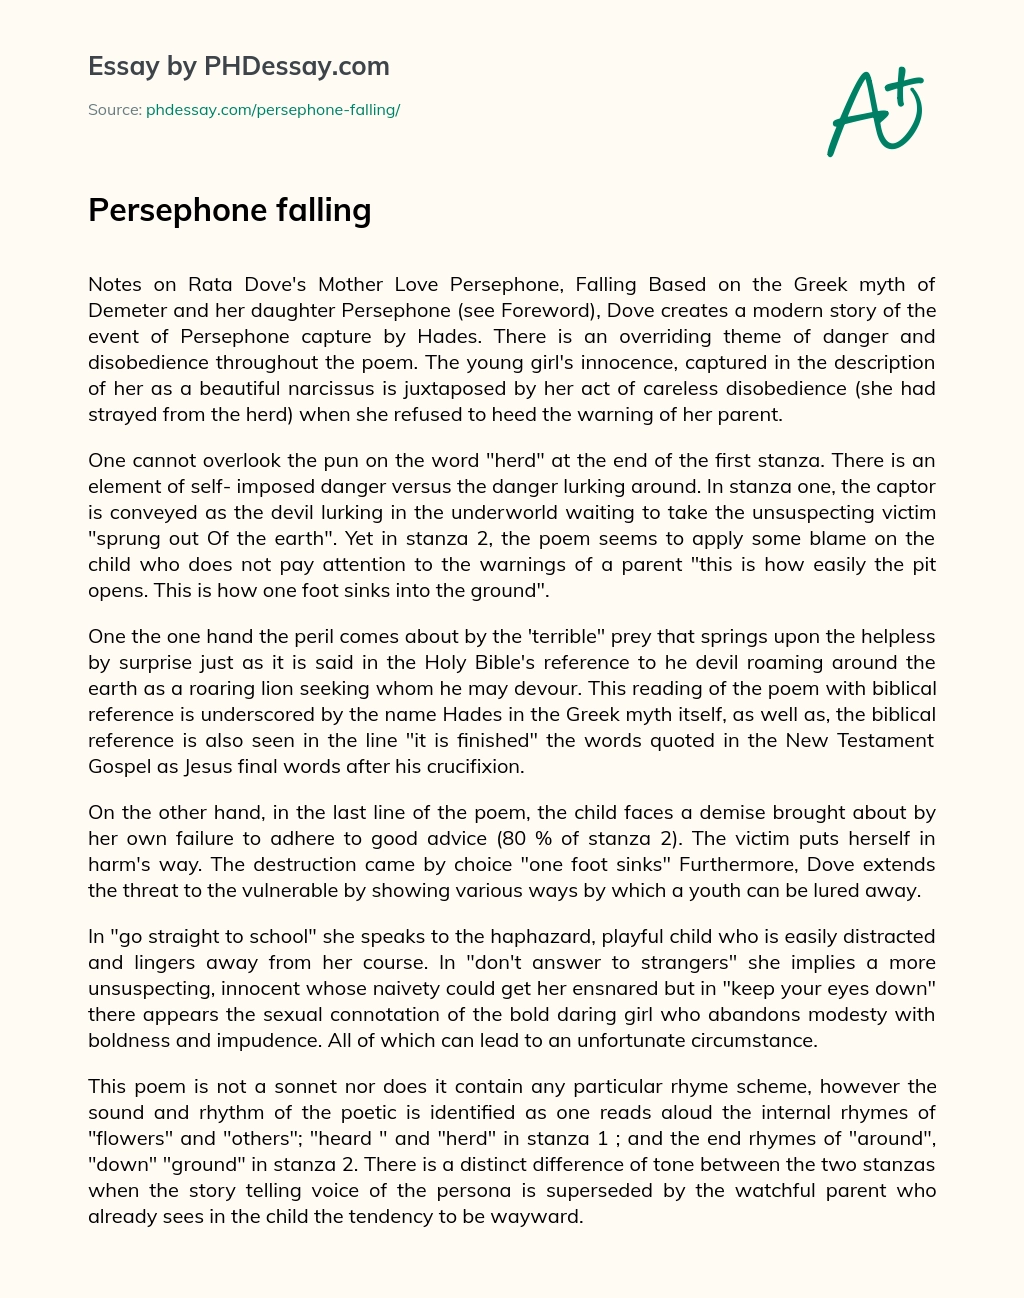 Persephone falling essay